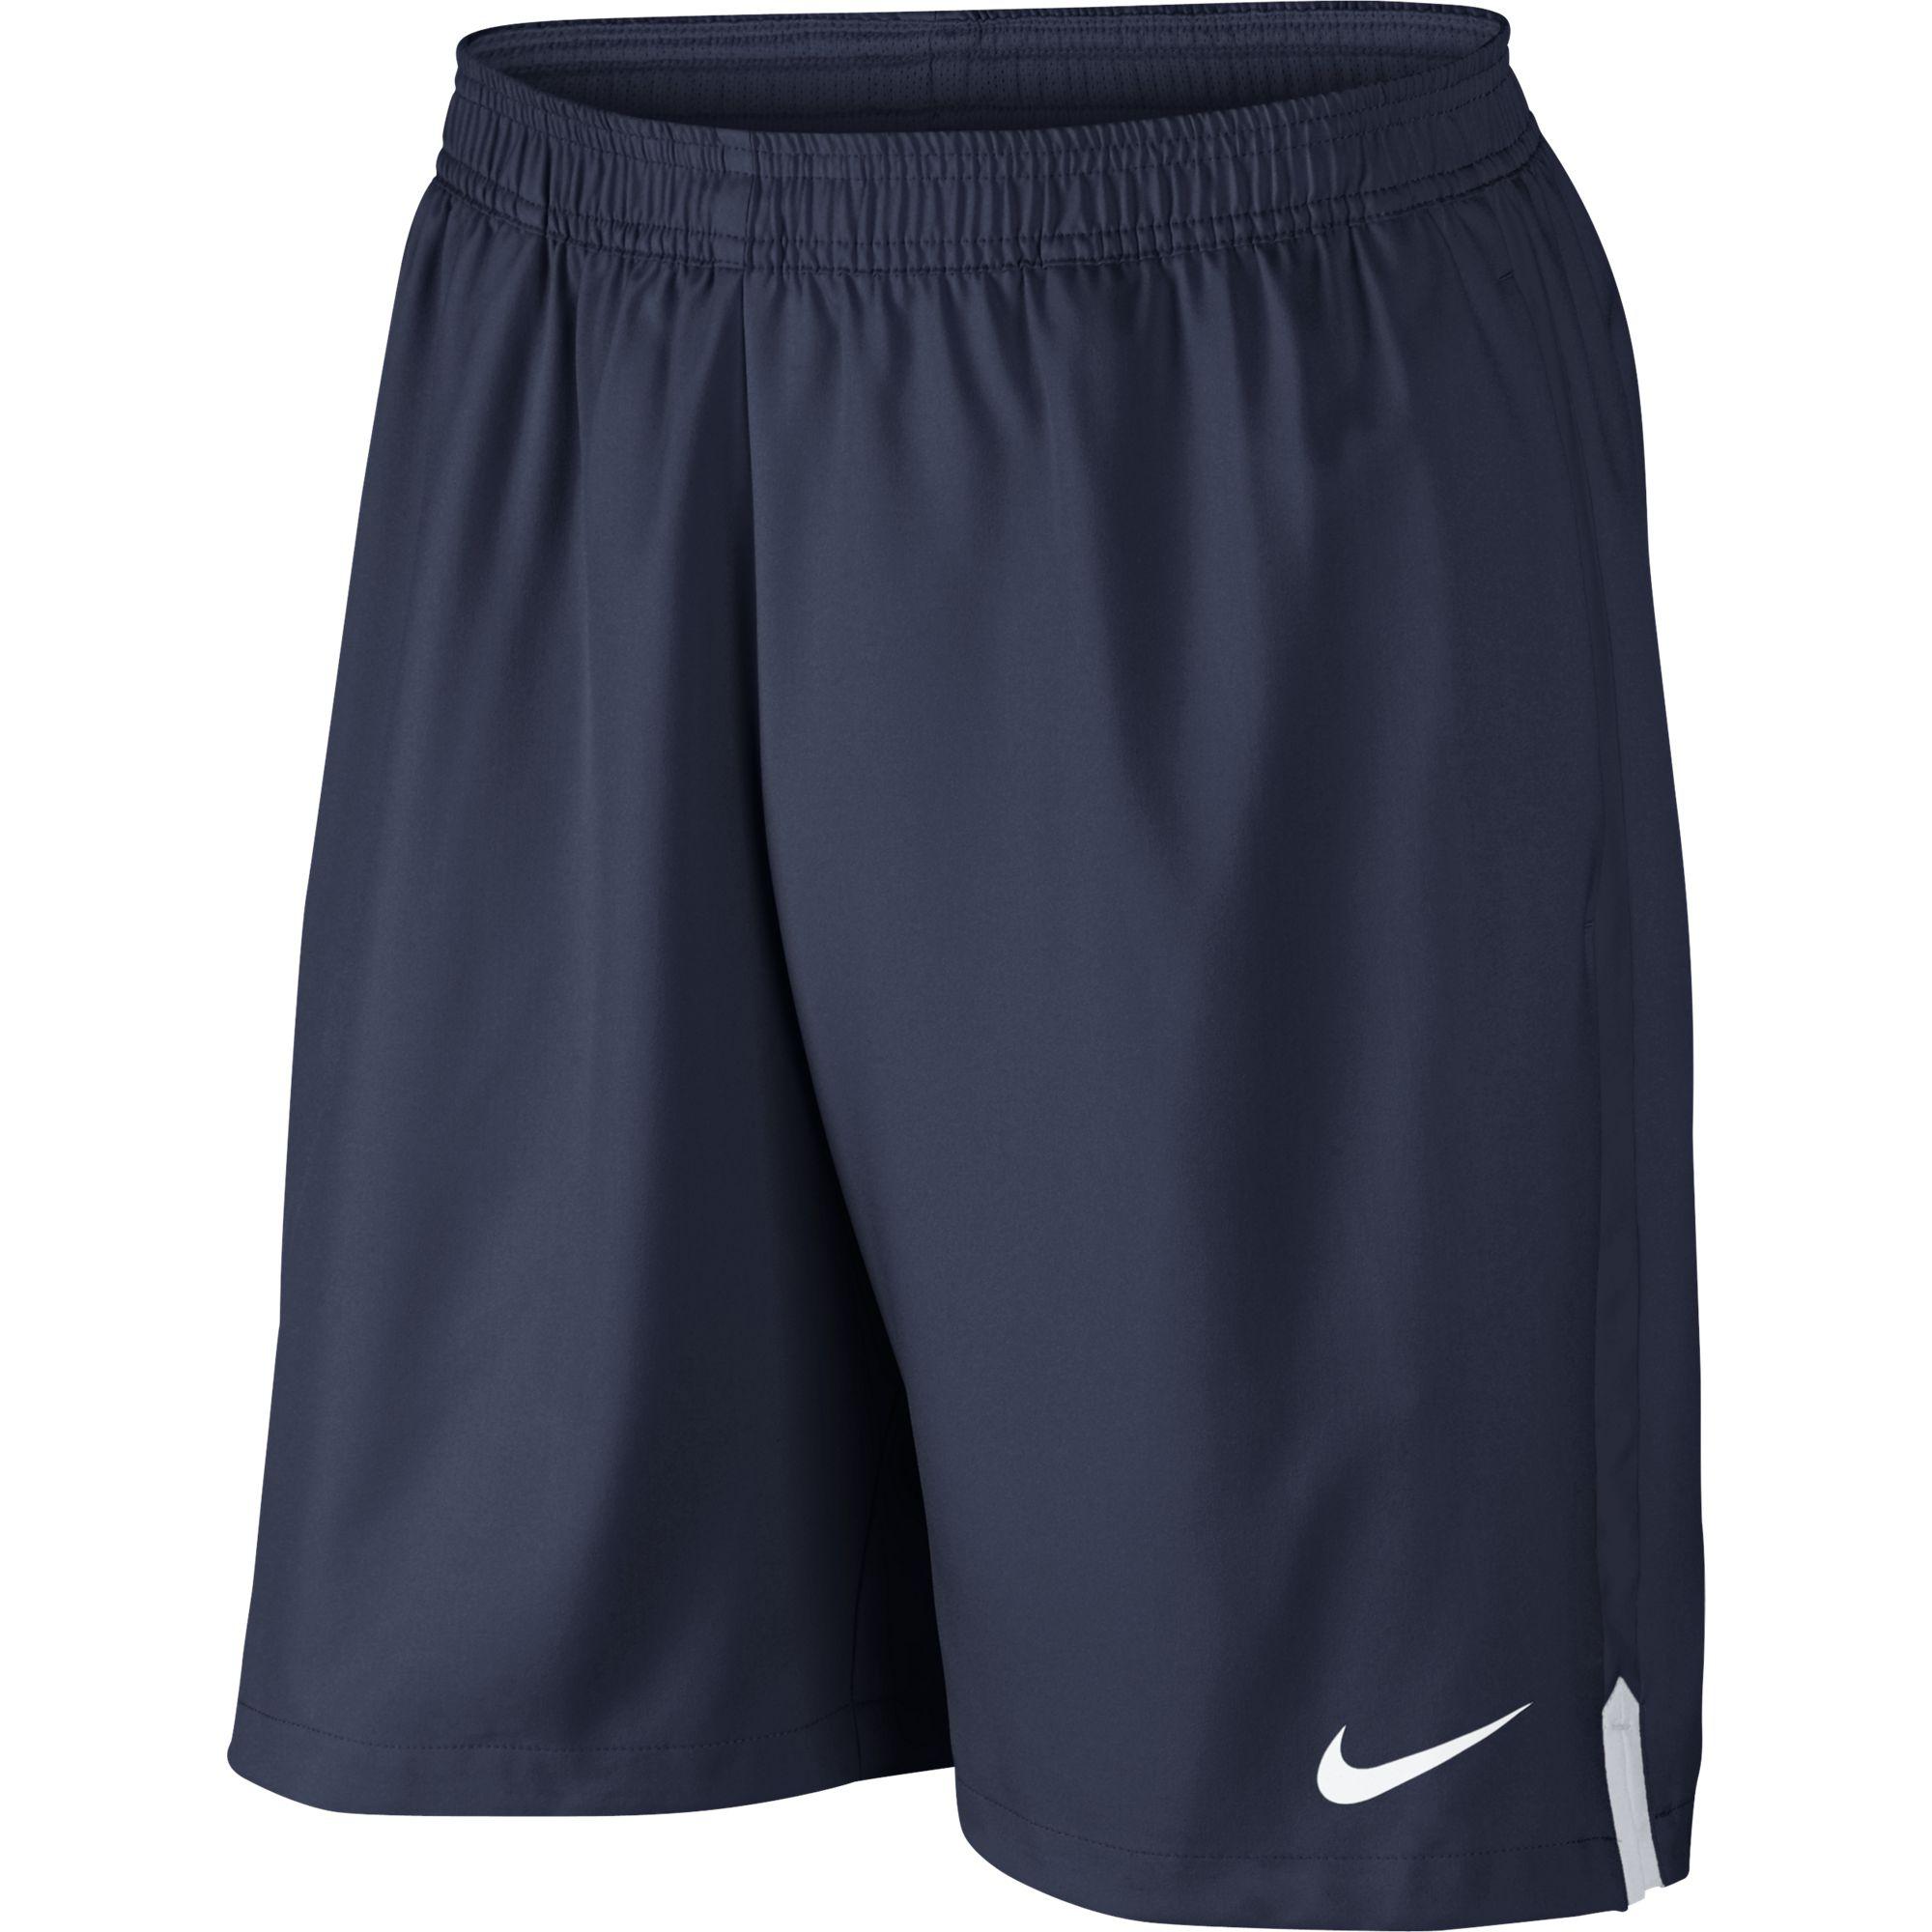 Nike Mens Court 9 Inch Tennis Shorts - Midnight Navy - Tennisnuts.com